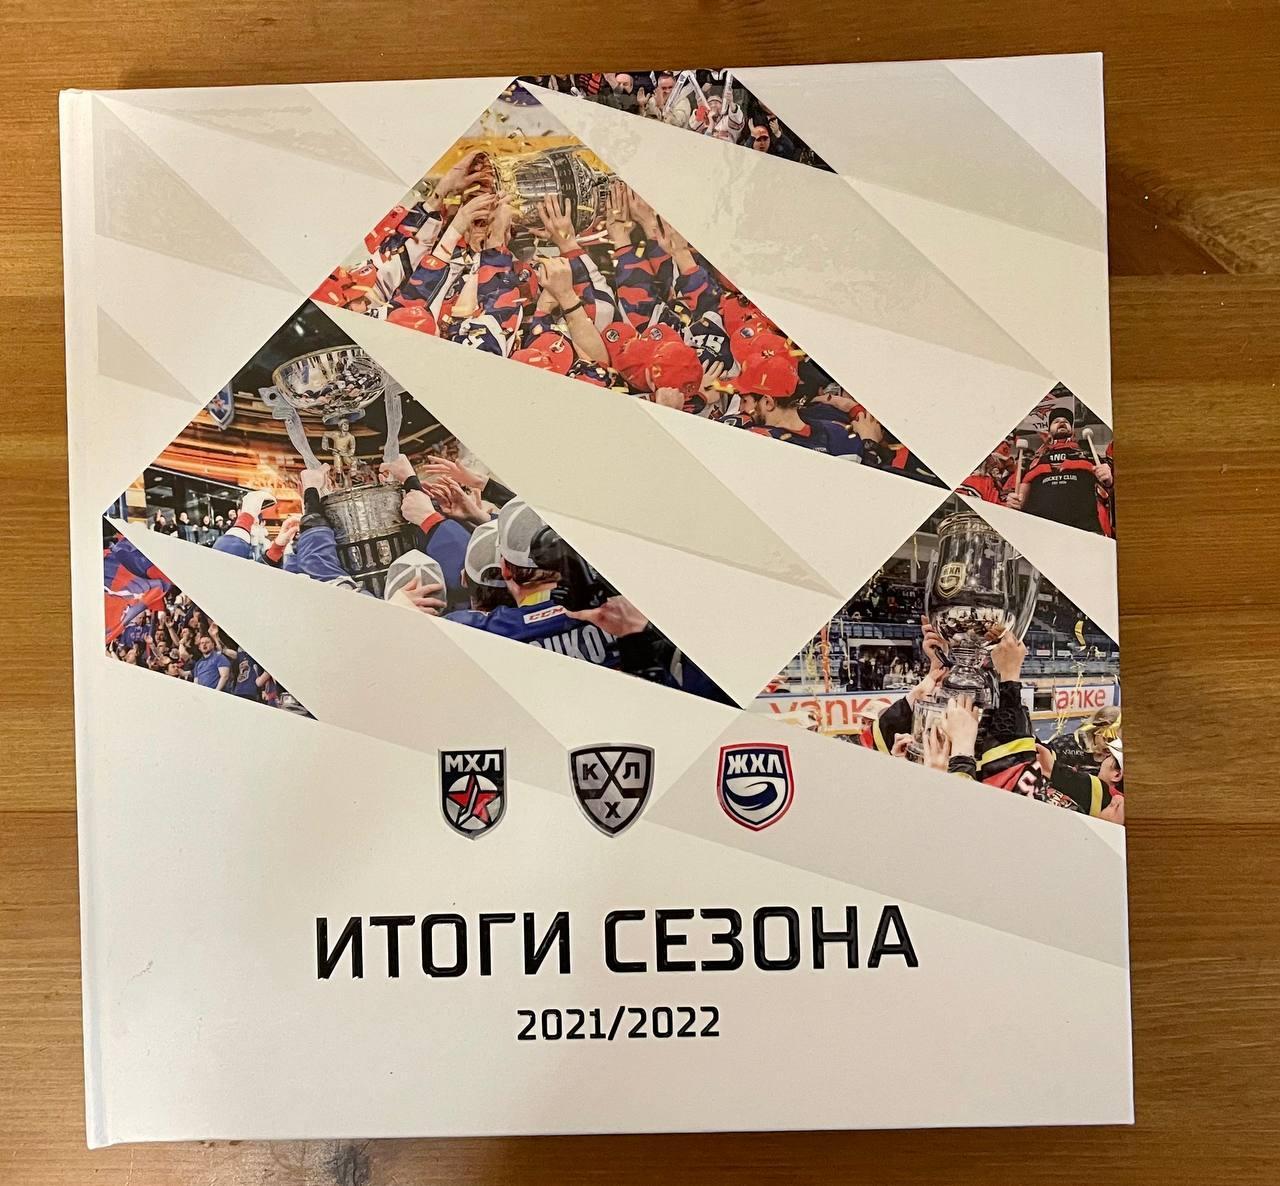 хоккей КХЛ МХЛ ЖХЛ Итоги сезона 2021/22